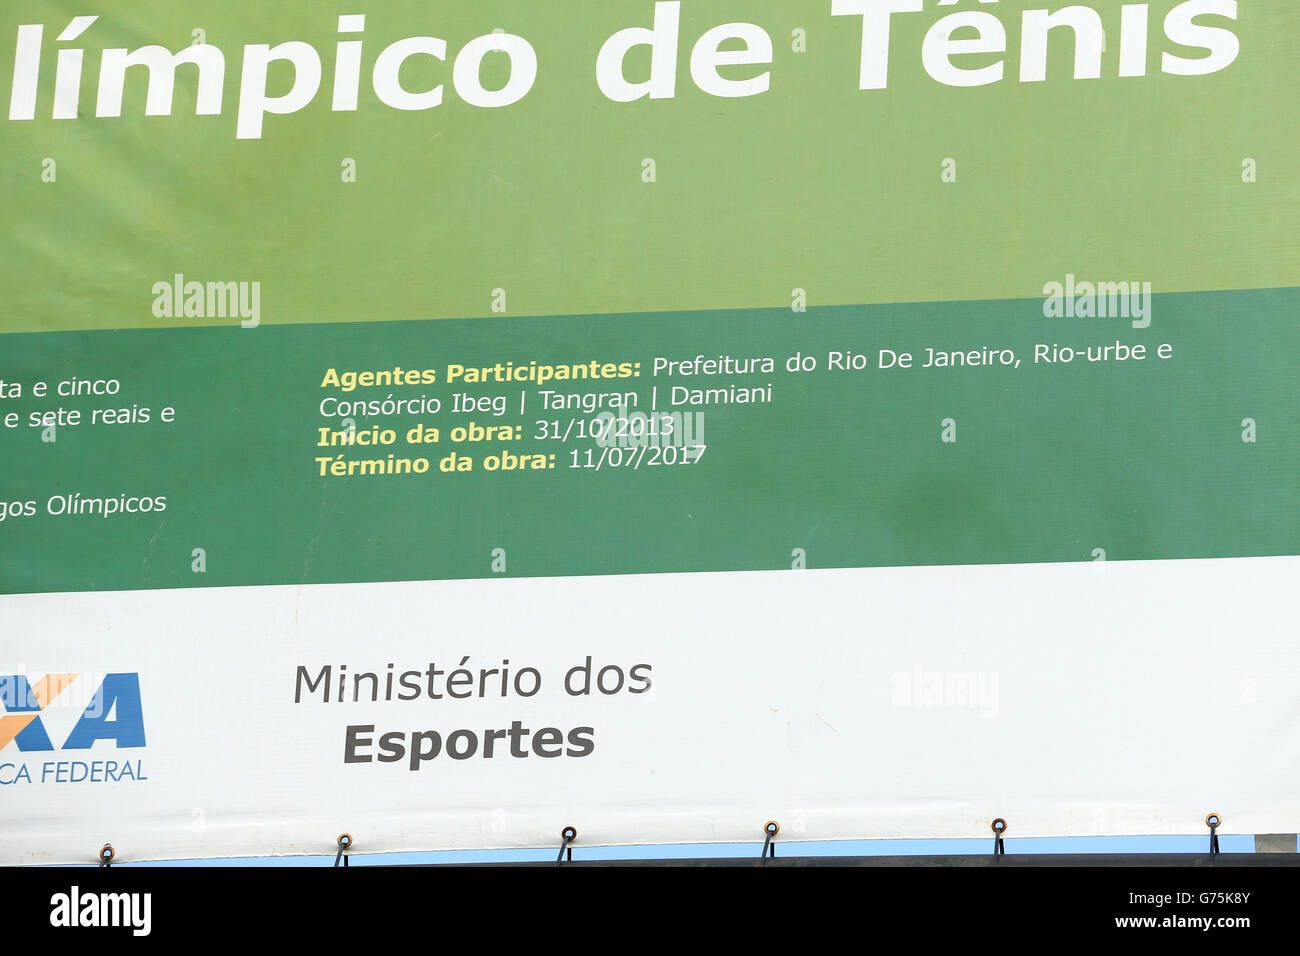 Jeux olympiques - Rio Jeux Olympiques de 2016 - préparation du parc olympique - Rio de Janeiro.Signalisation le site du centre de tennis des Jeux de Rio 2016, qui suggère que la construction ne sera pas terminée avant 2017 Banque D'Images